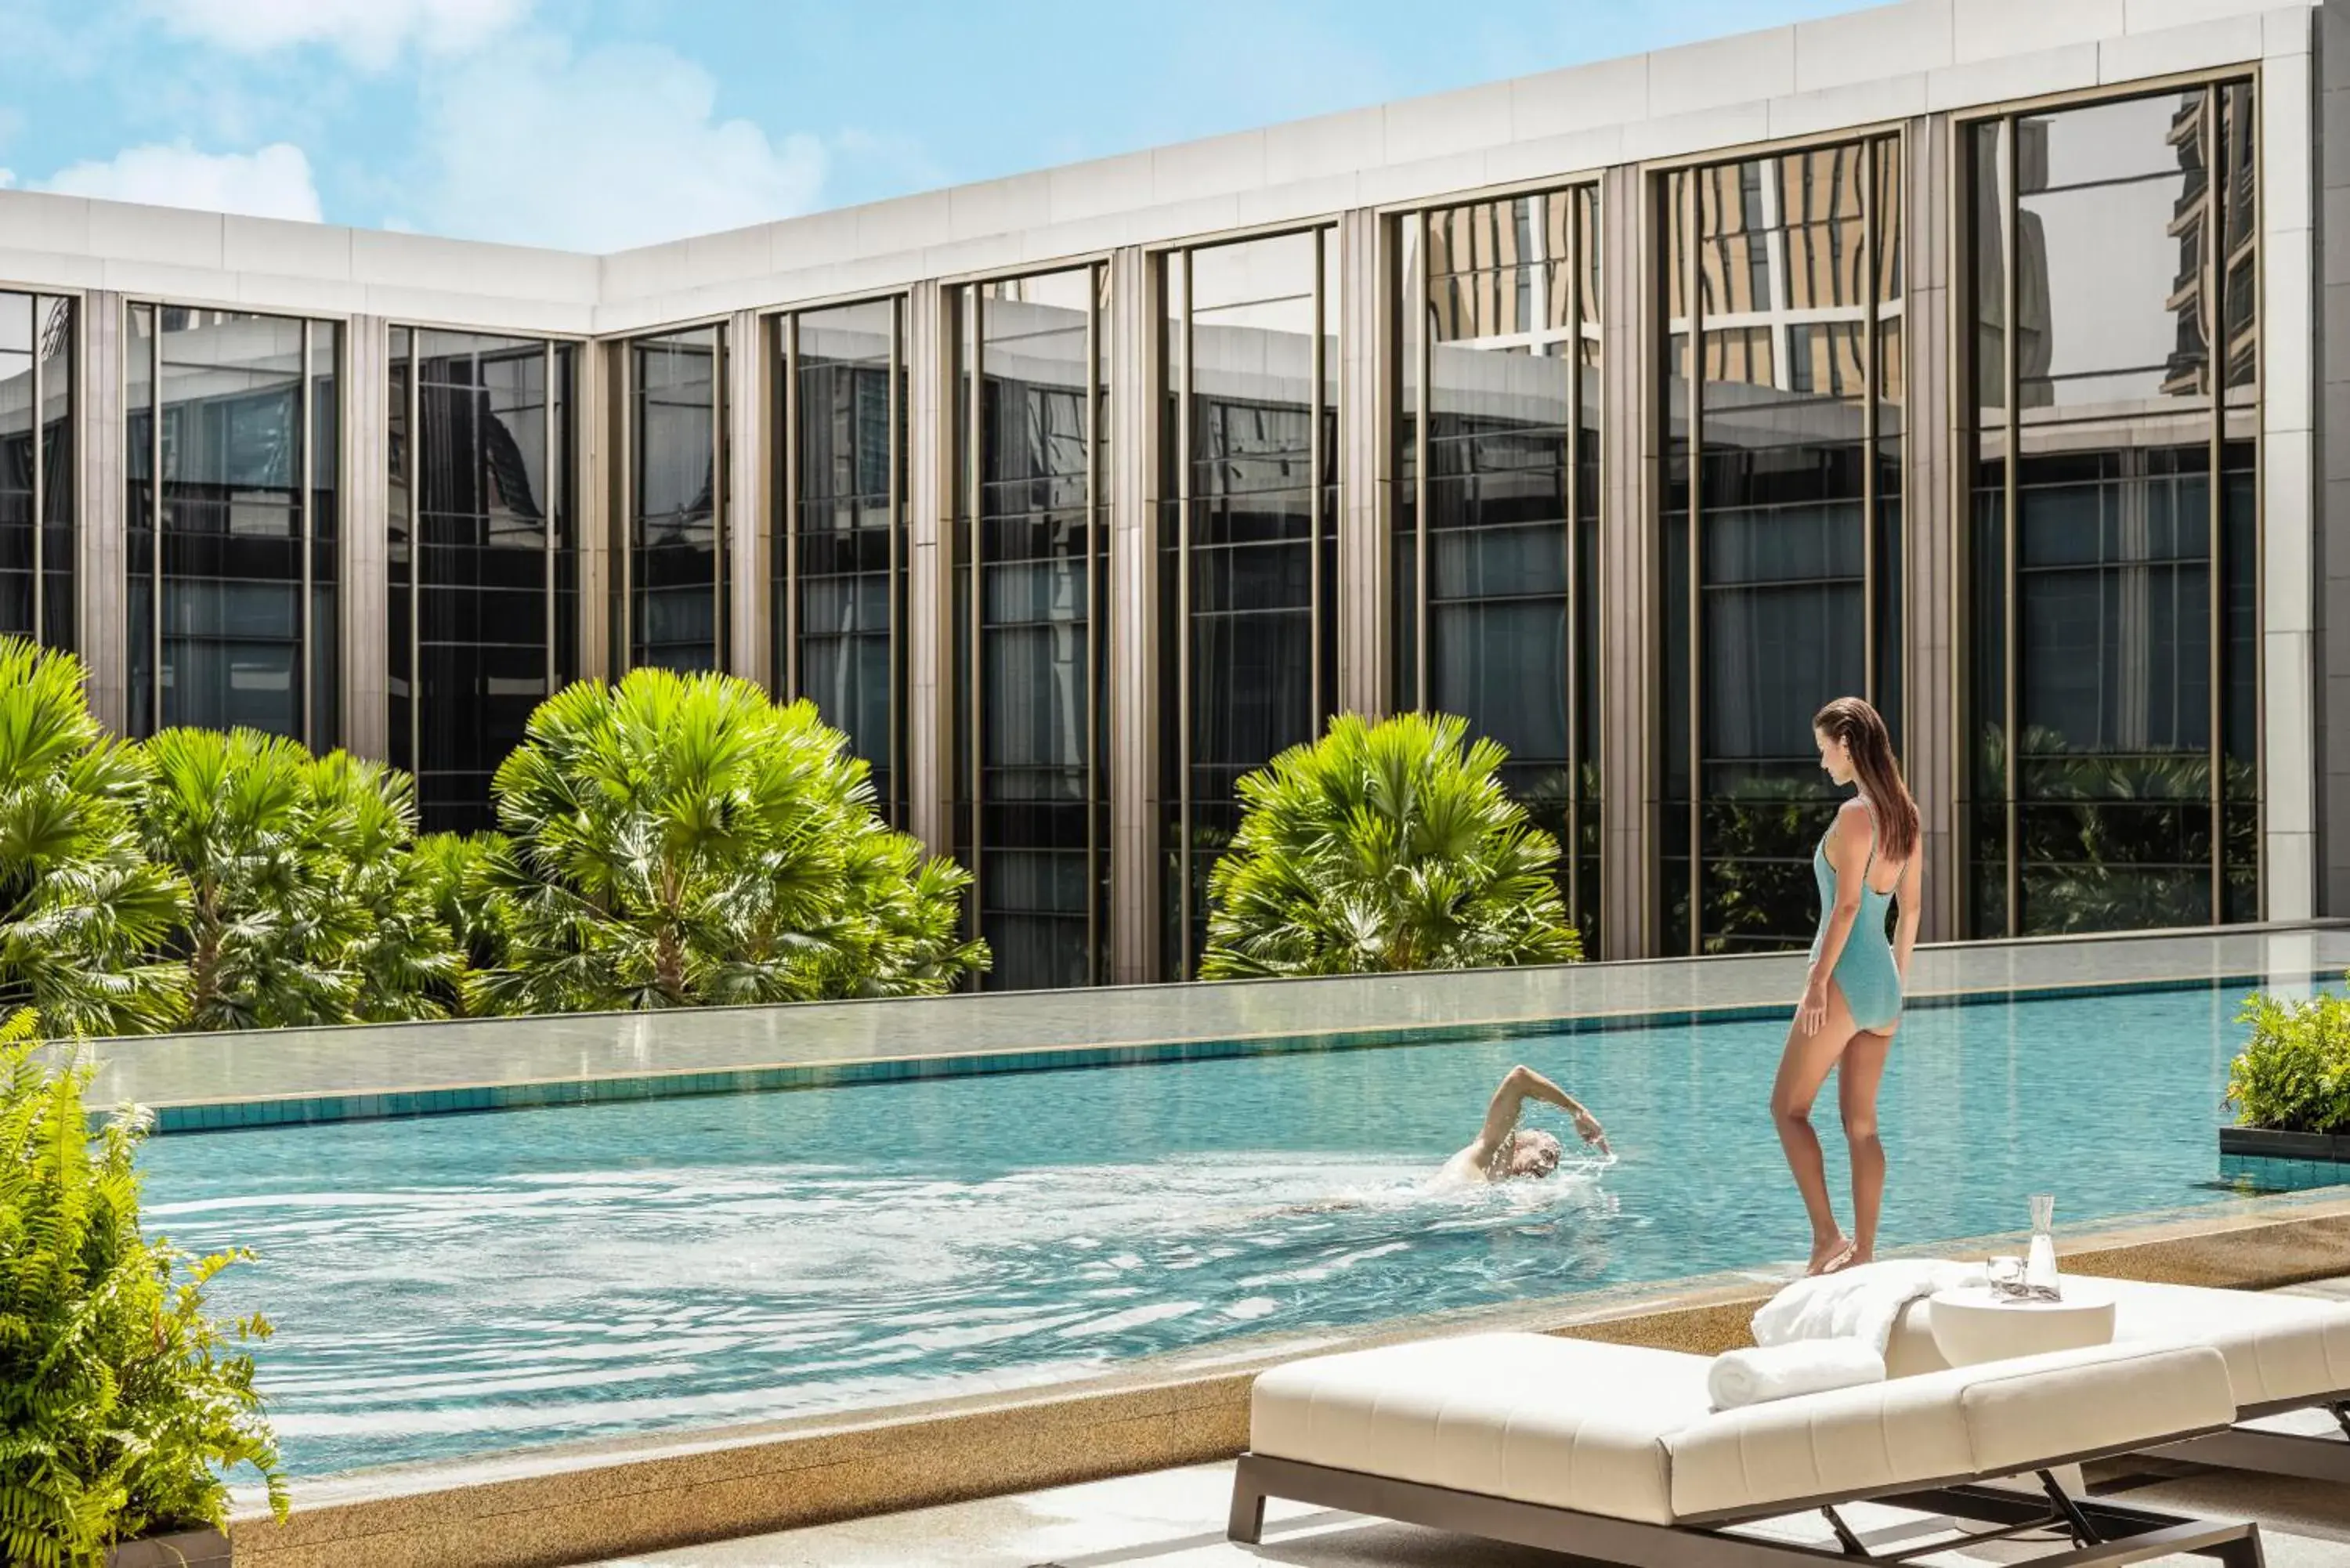 Spa and wellness centre/facilities, Swimming Pool in Four Seasons Hotel Bangkok at Chao Phraya River